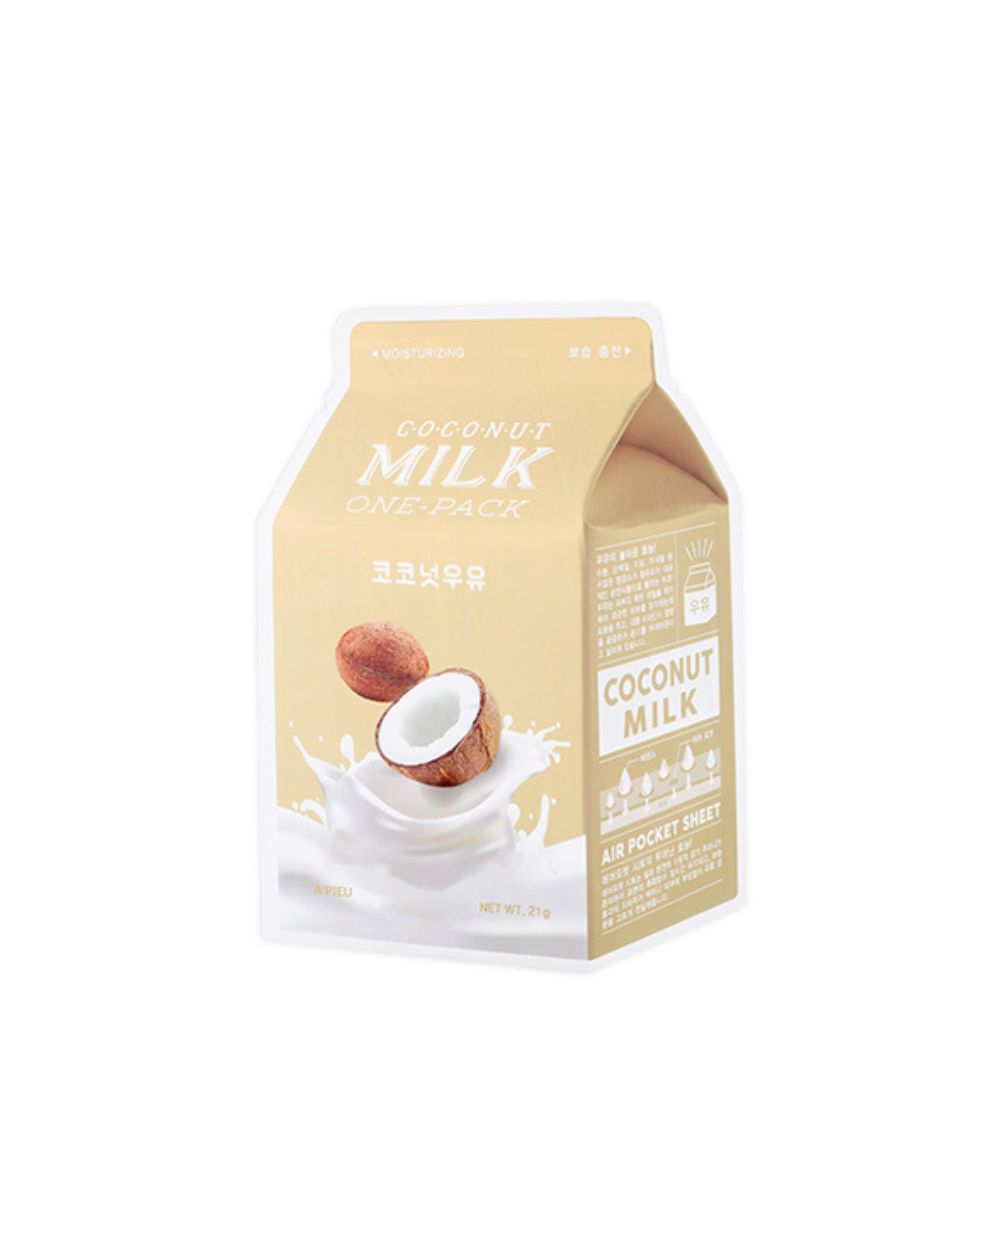 A'pieu - One Milk Pack